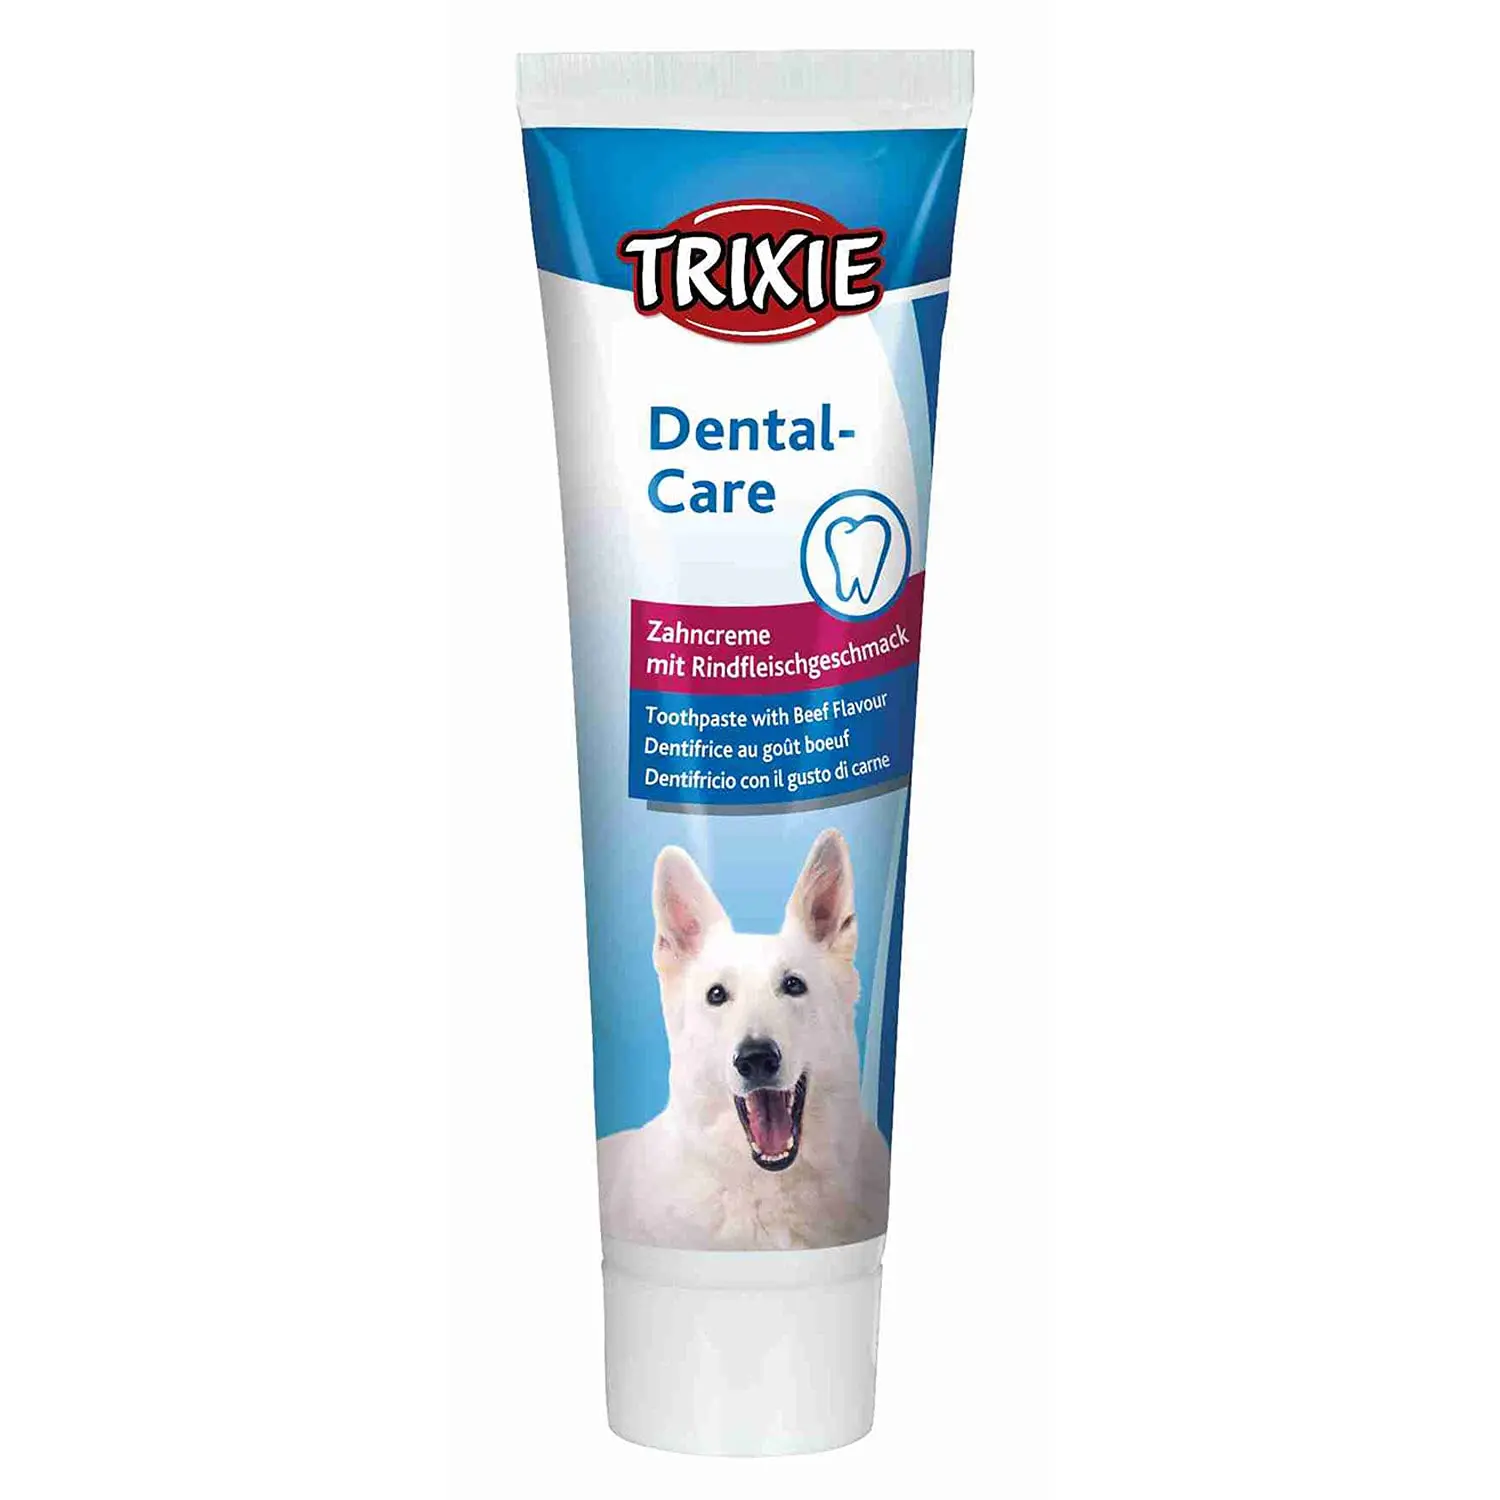 Pasta de dientes para perros: cuidando la salud bucal de tu mascota